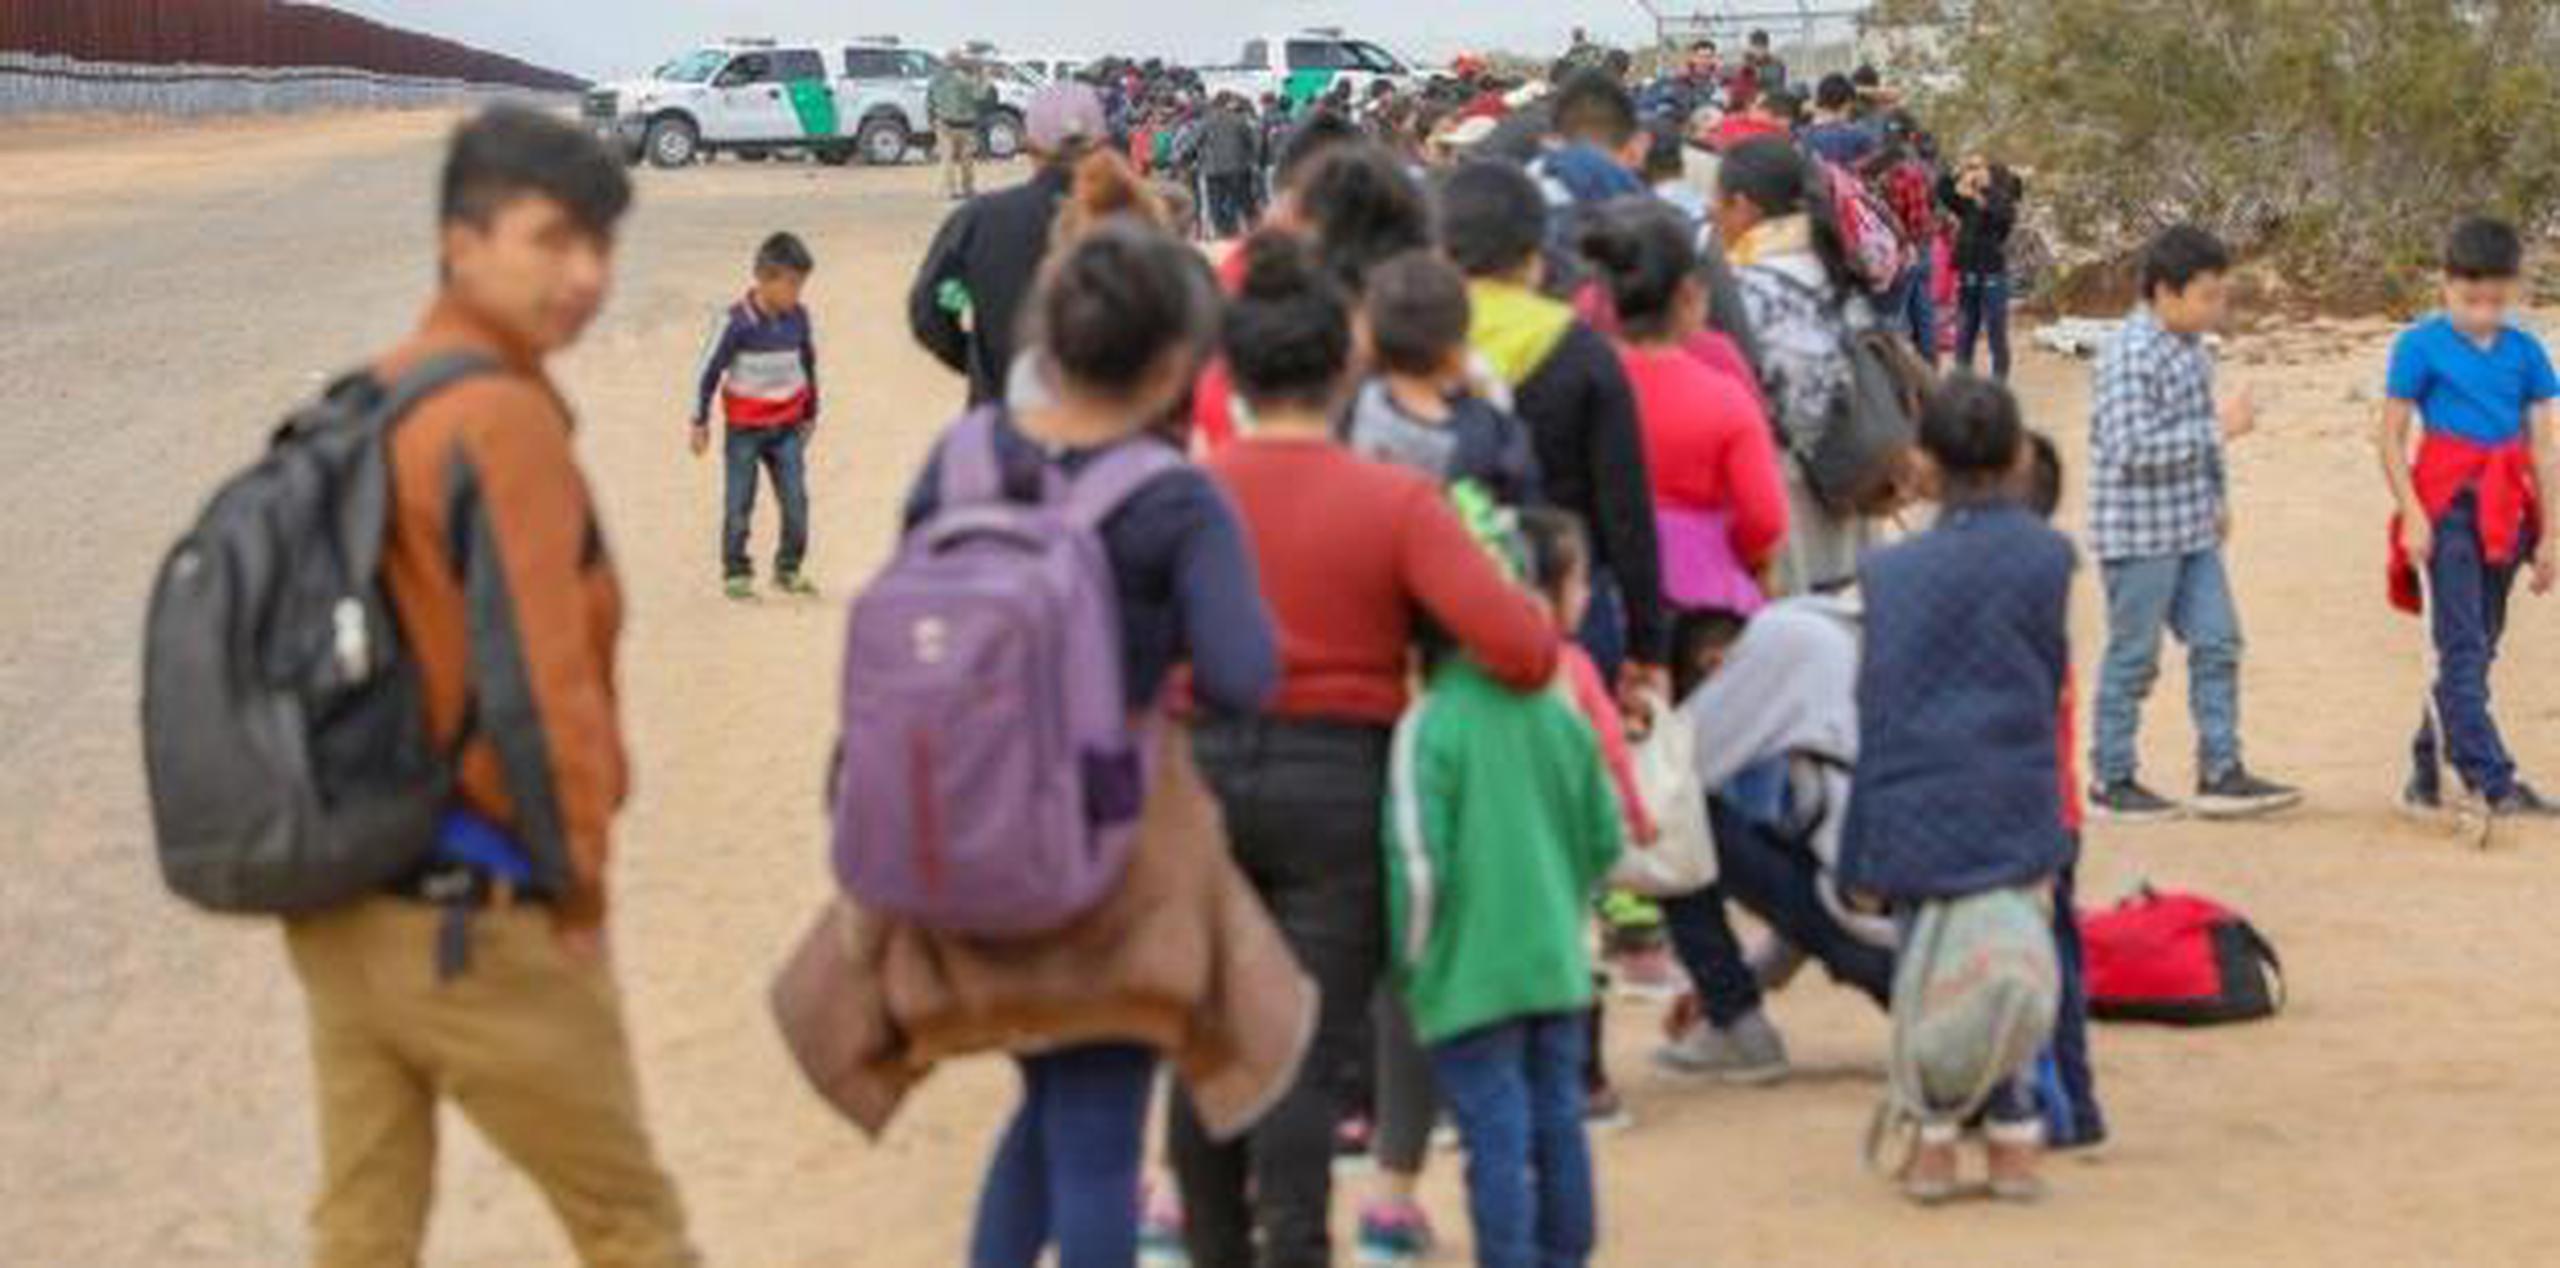 Los inmigrantes cavaron en total siete agujeros por debajo de la valla fronteriza de acero. Otros treparon y saltaron la barda, de acuerdo a ABC News. (EFE)